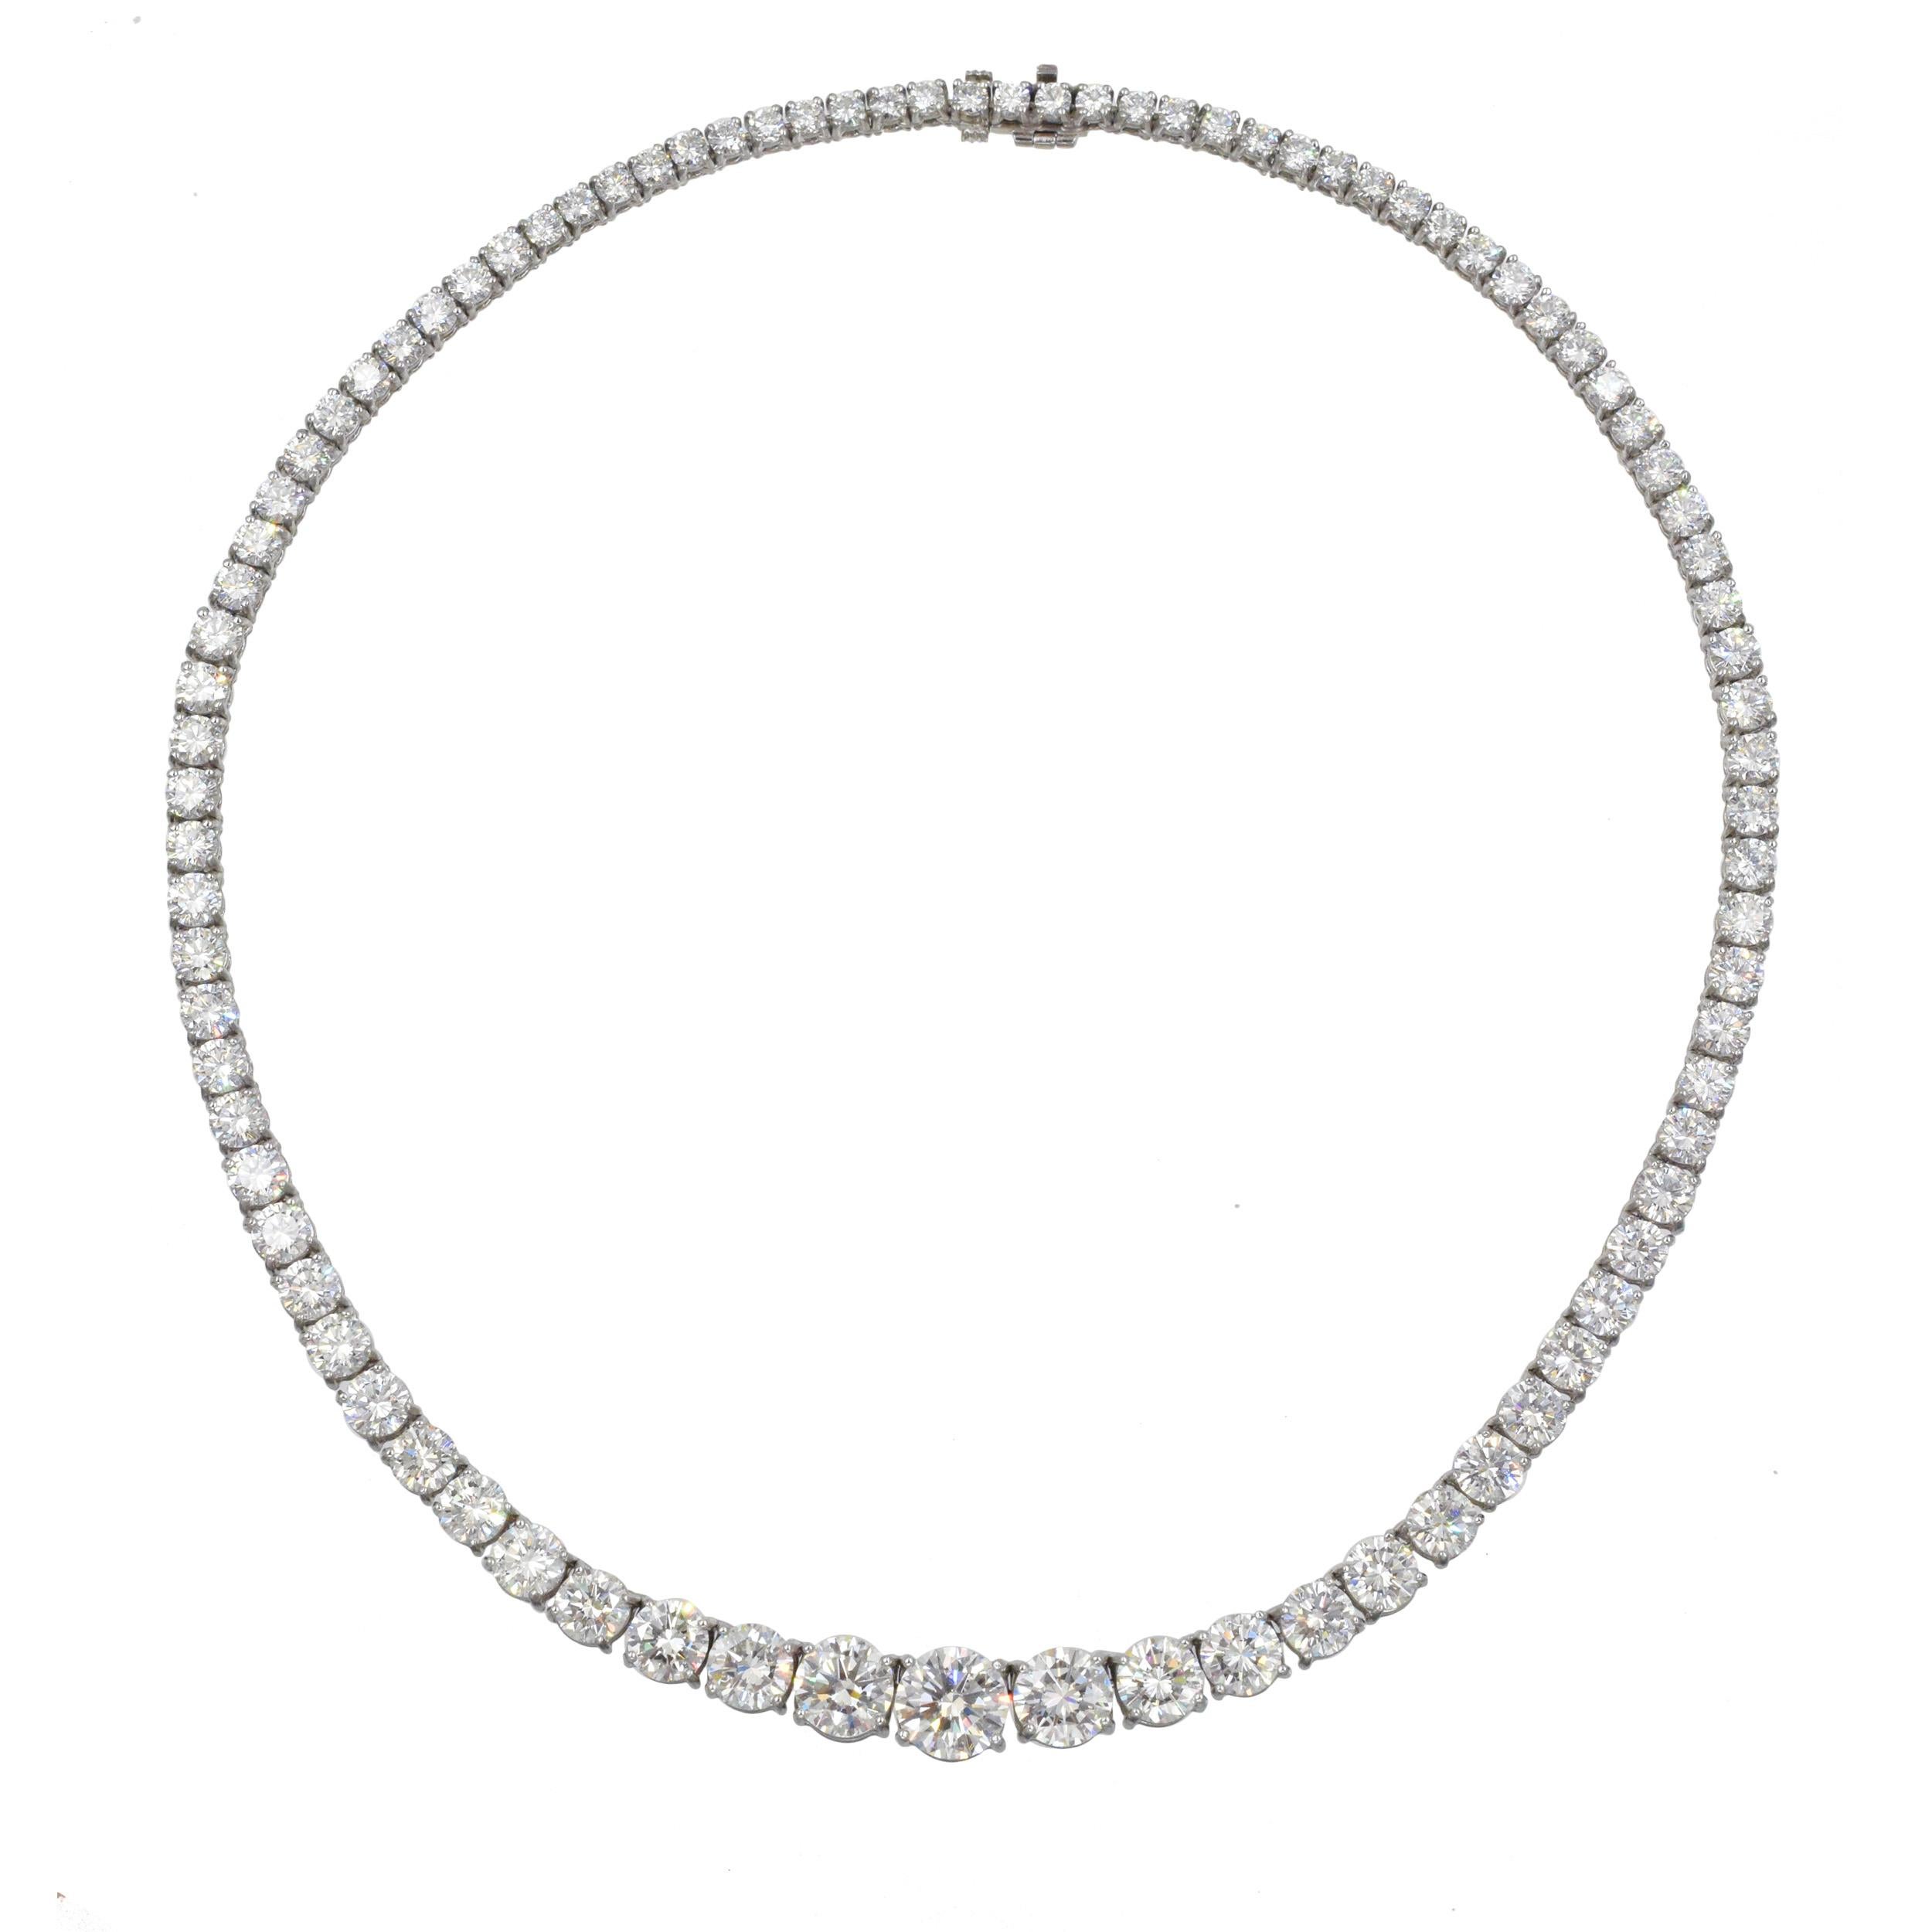 Tiffany & Co Platin und Diamant Riviera Halskette Diese Halskette hat einen runden
Diamant in der Mitte mit einem Gewicht von 2,26 ct, 2 runde Diamanten in der Mitte mit einem Gesamtgewicht von 2,92 ct, 86 runde Diamanten mit einem Gewicht von 24,43